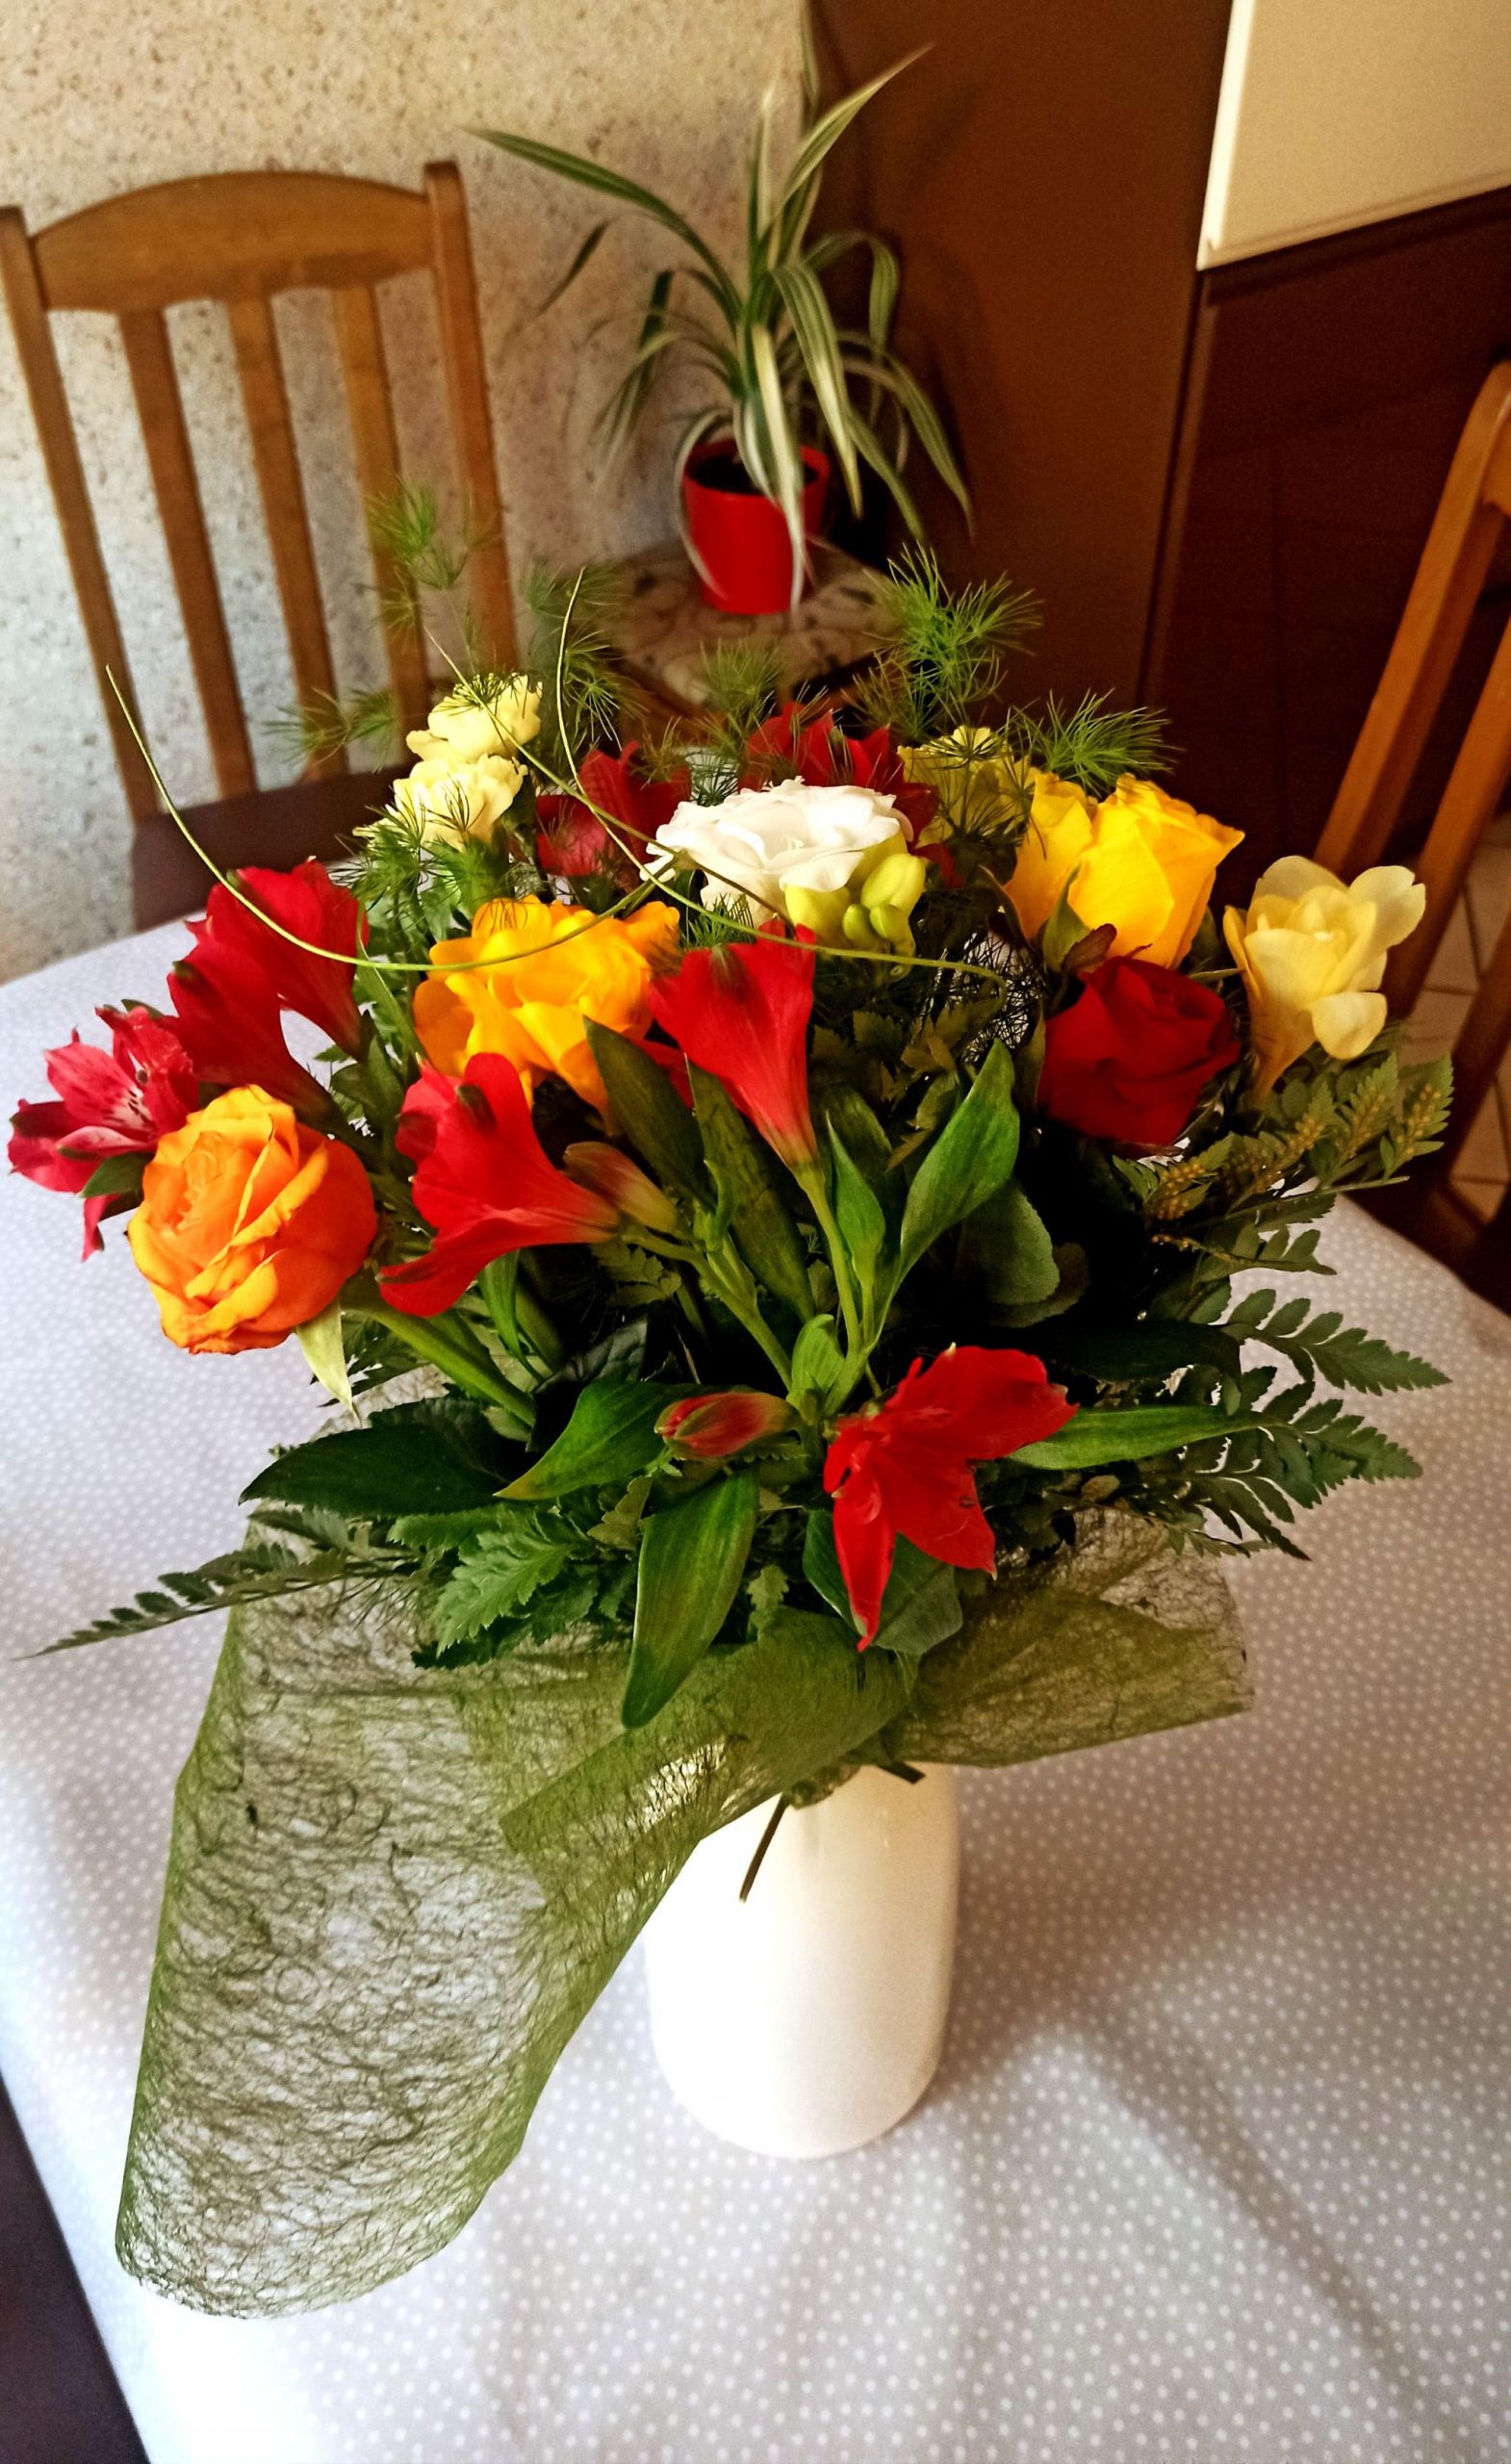 Kwiaty koloru czerwonego i żółtego z przybraniem w wazonie stojące na stole przyozdobionym białym obrusem, wokół stoją krzesła